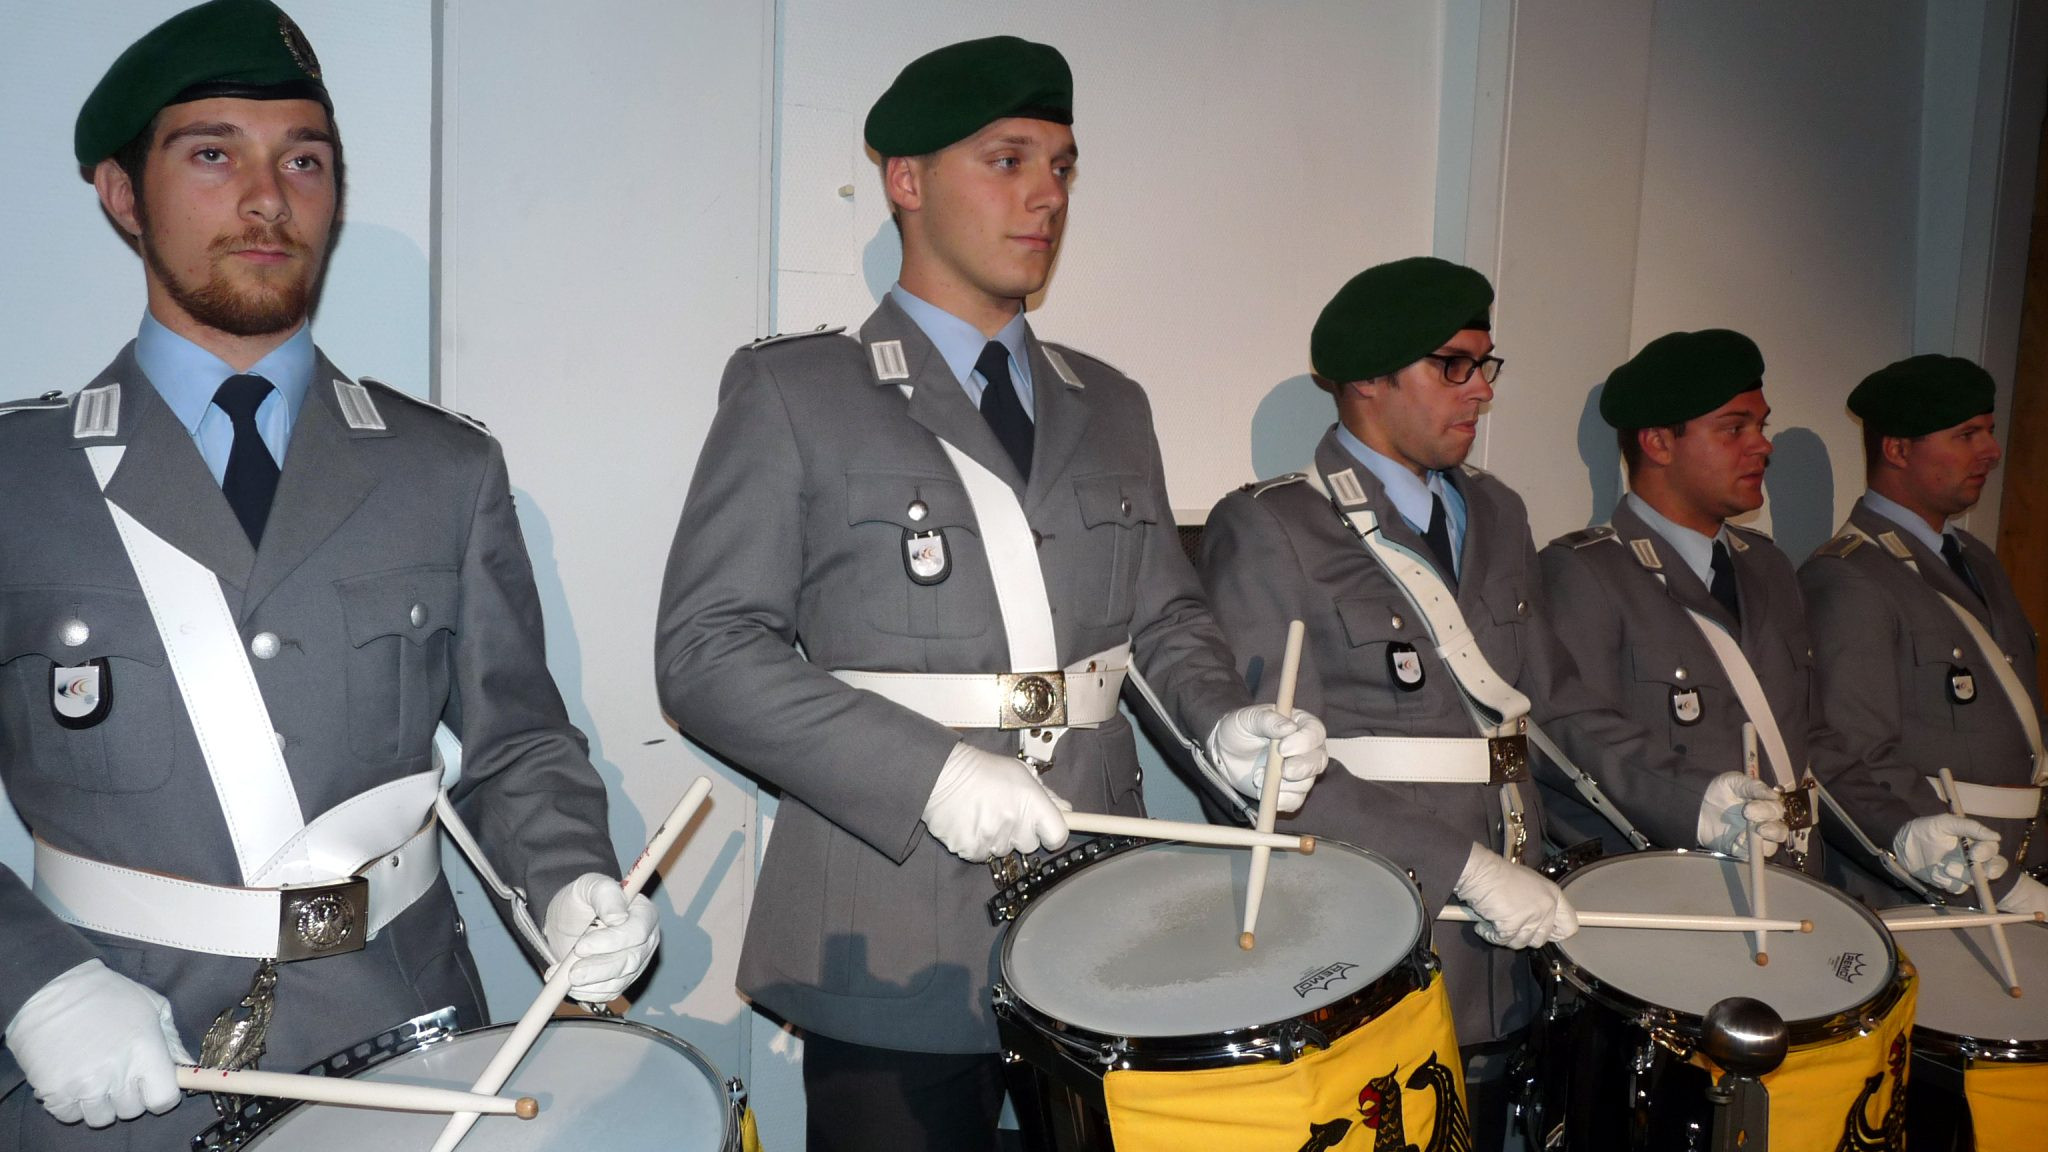 Für die Darbietung der von Alexander Reuber komponierten Trailermusik kam
extra eine Trommlerformation des Spielmannszuges der Bundeswehr nach Olpe. Foto: mari